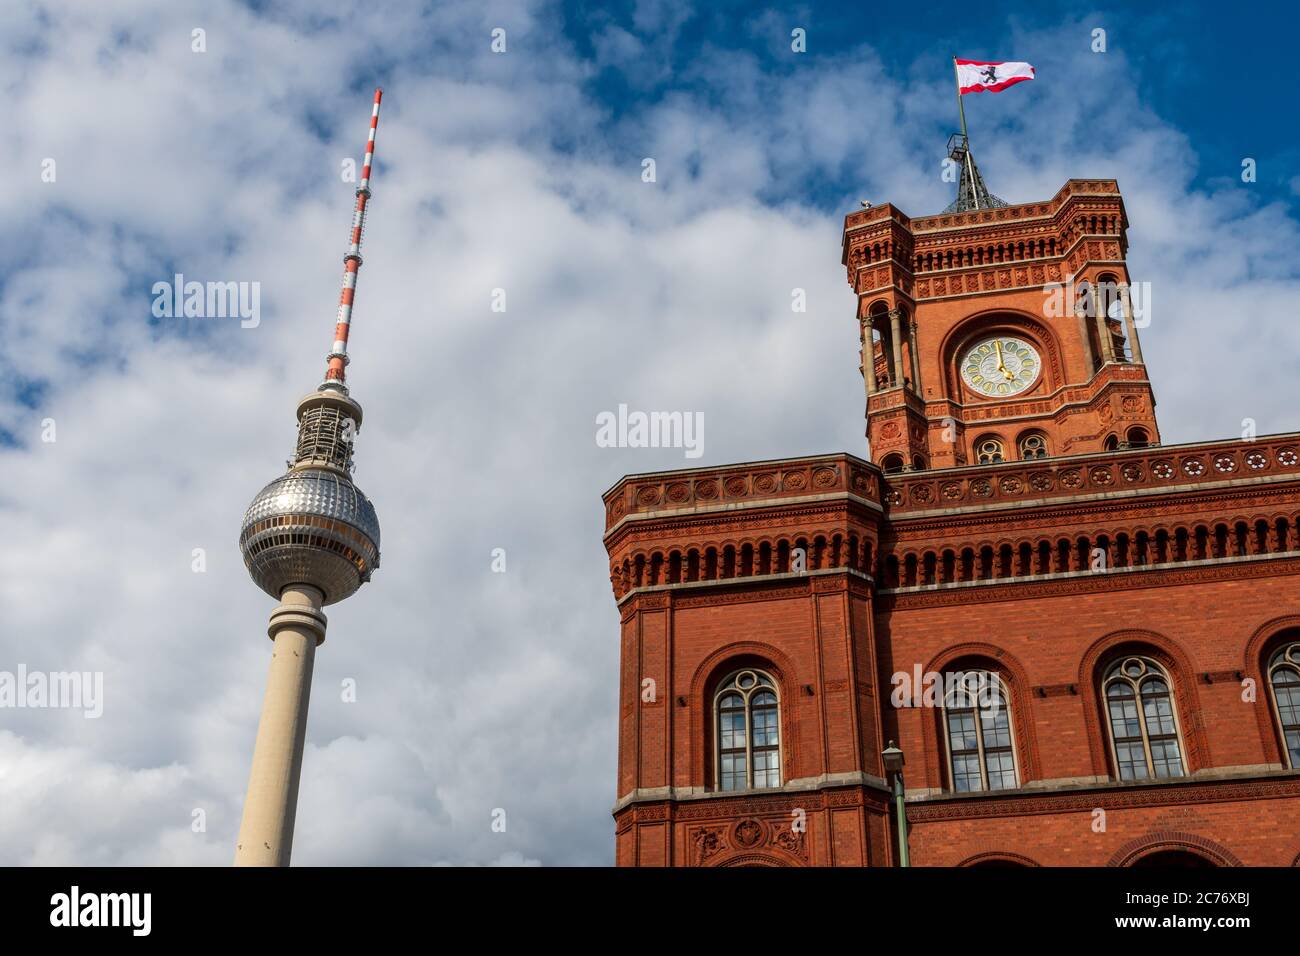 Berlin, Allemagne / juillet 12 2020 : l'hôtel de ville de Berlin et la tour de télévision de Berlin sont des bâtiments emblématiques. Là, les deux isolés dans le même coup. Banque D'Images